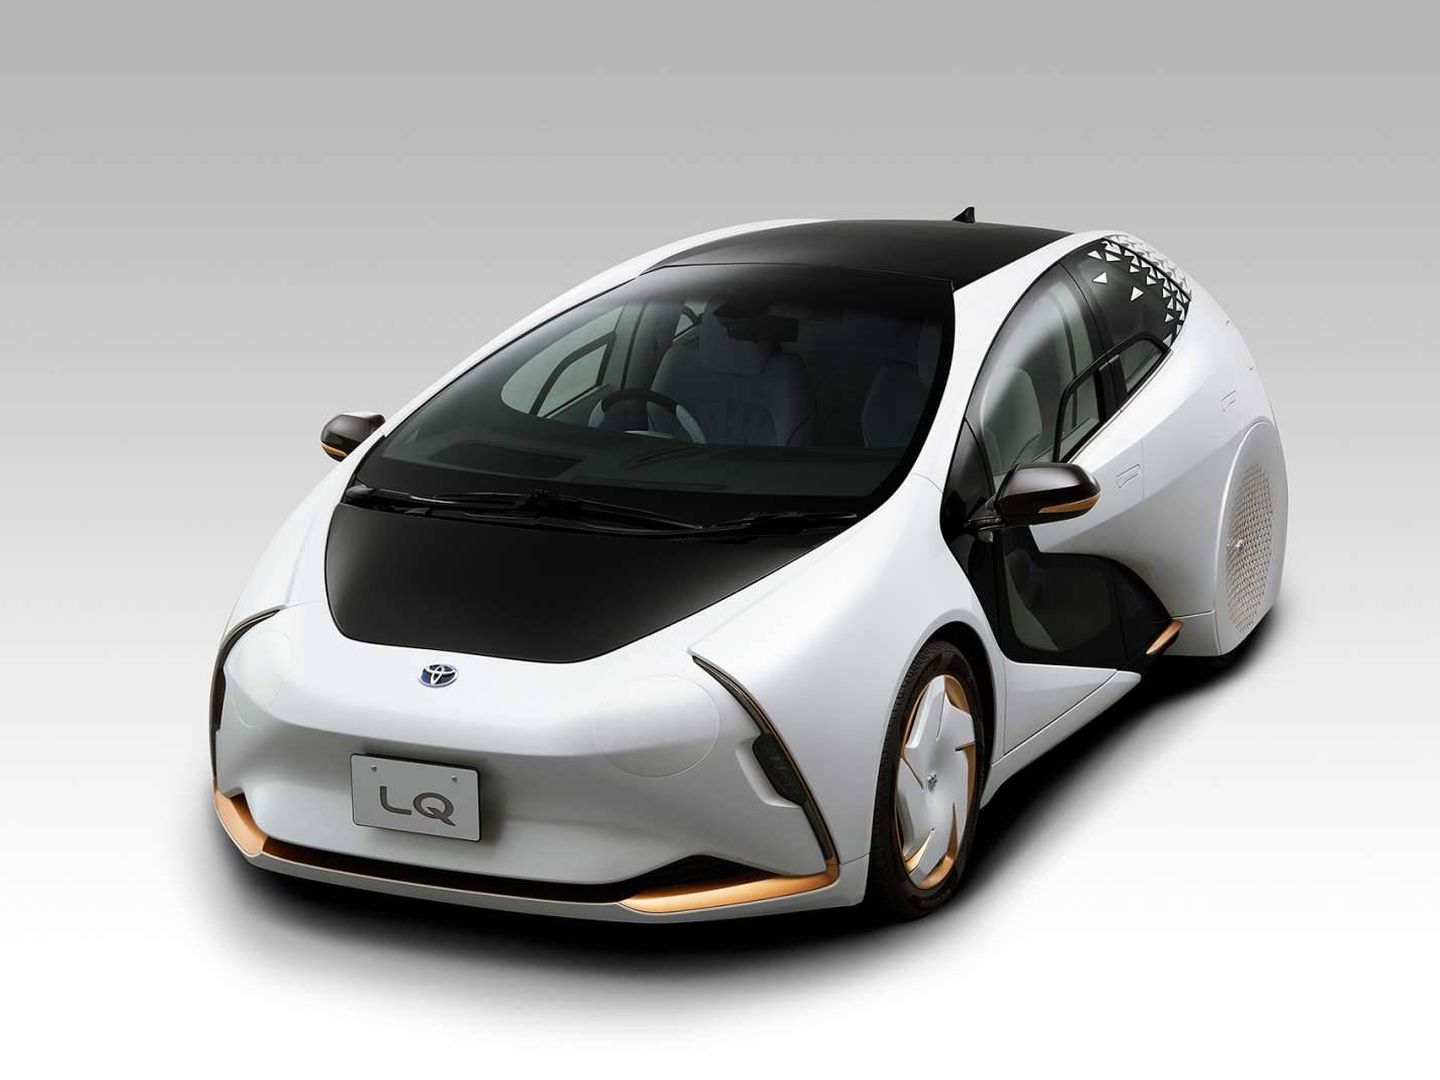 El concepto de diseño del nuevo coche con batería de estado sólido. (Toyota)